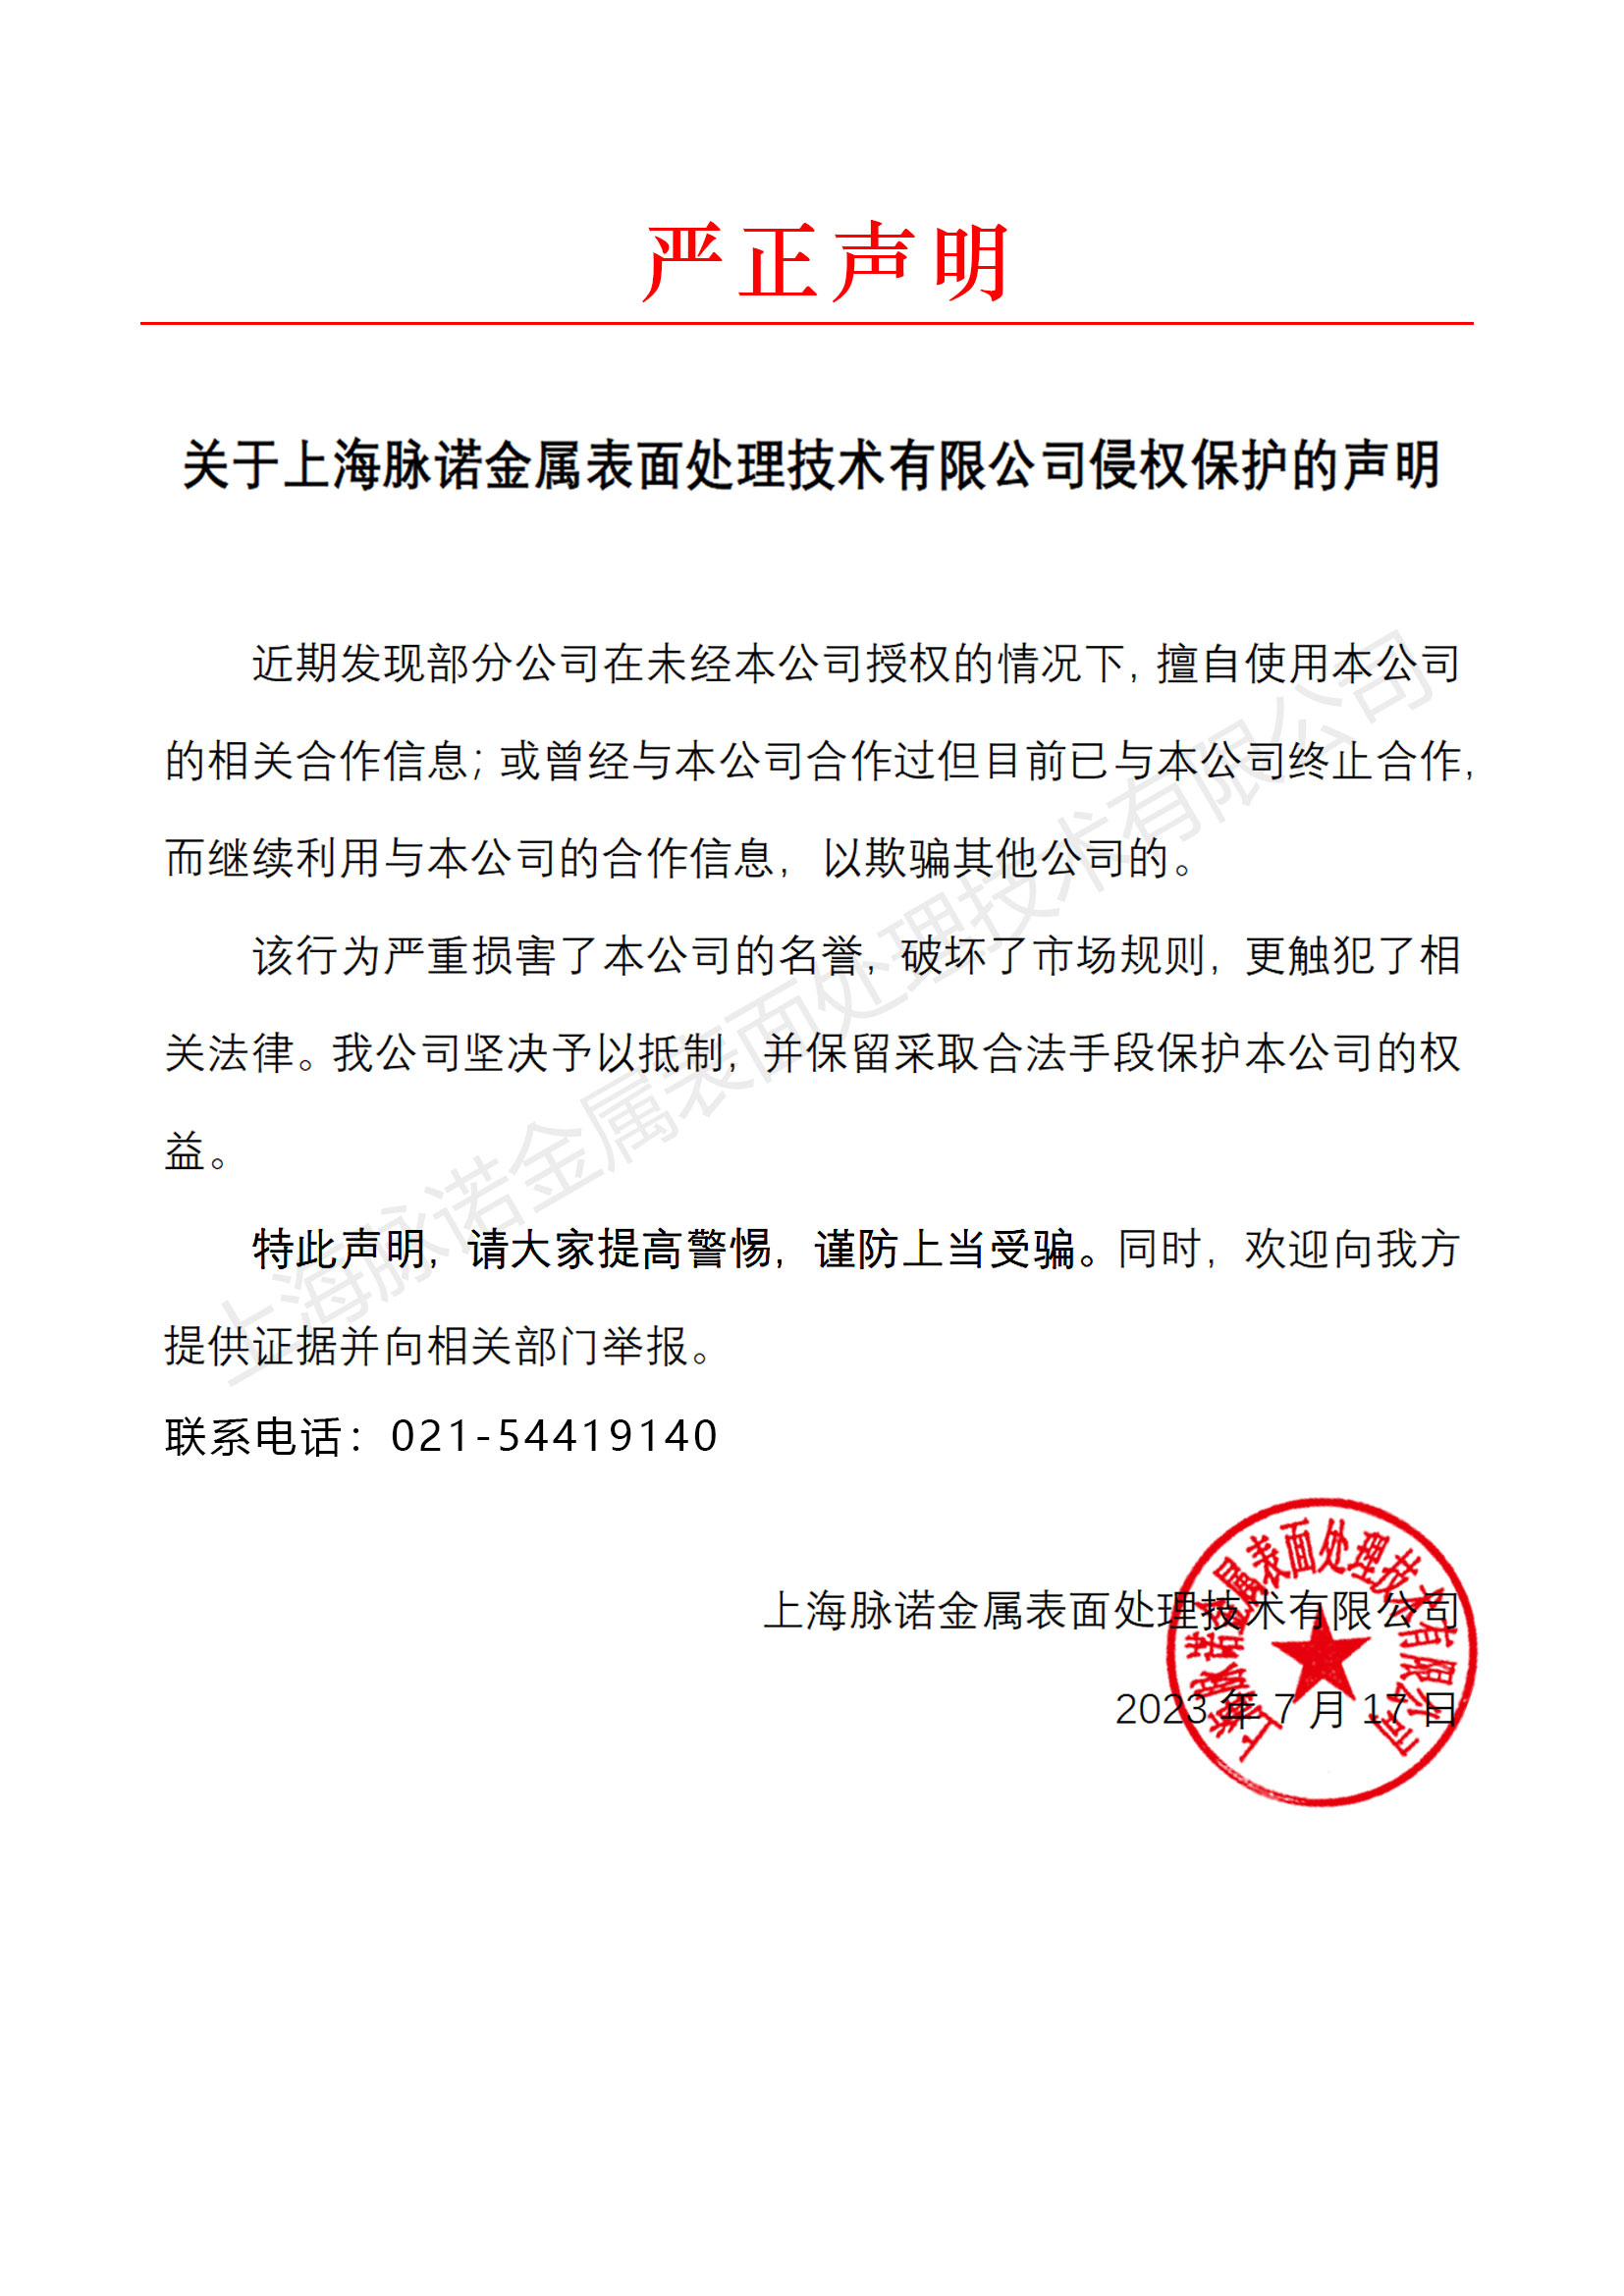 关于上海脉诺金属表面处理技术有限公司侵权保护的声明